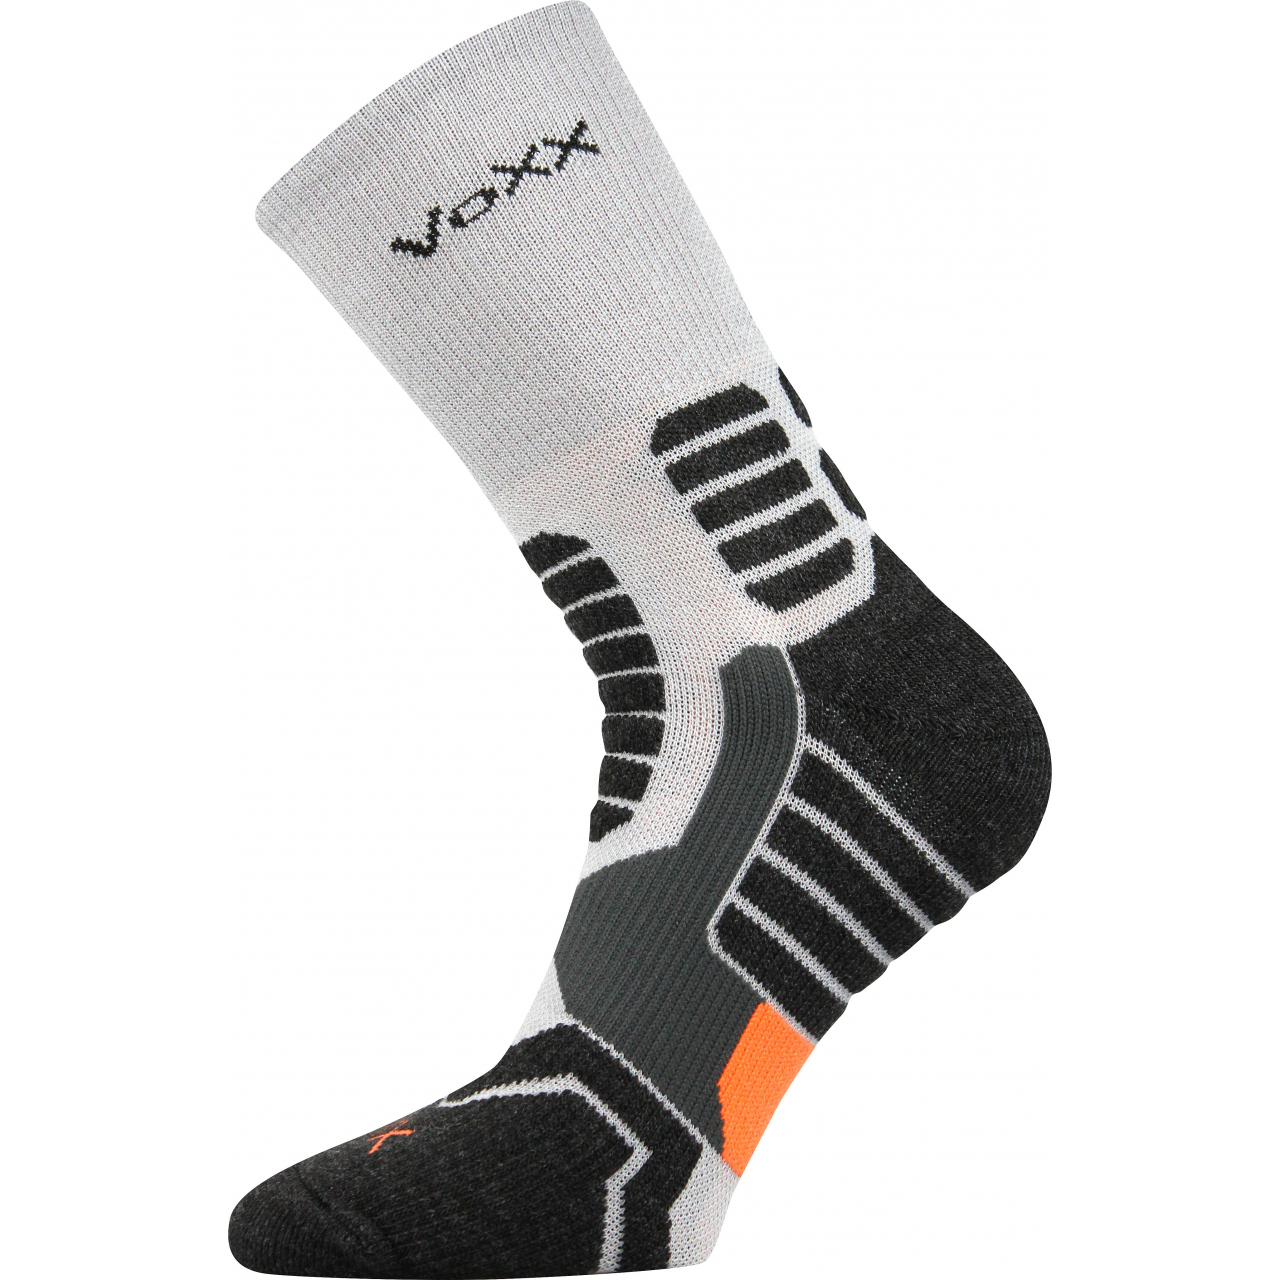 Ponožky kompresní unisex Voxx Ronin - světle šedé-černé, 43-46